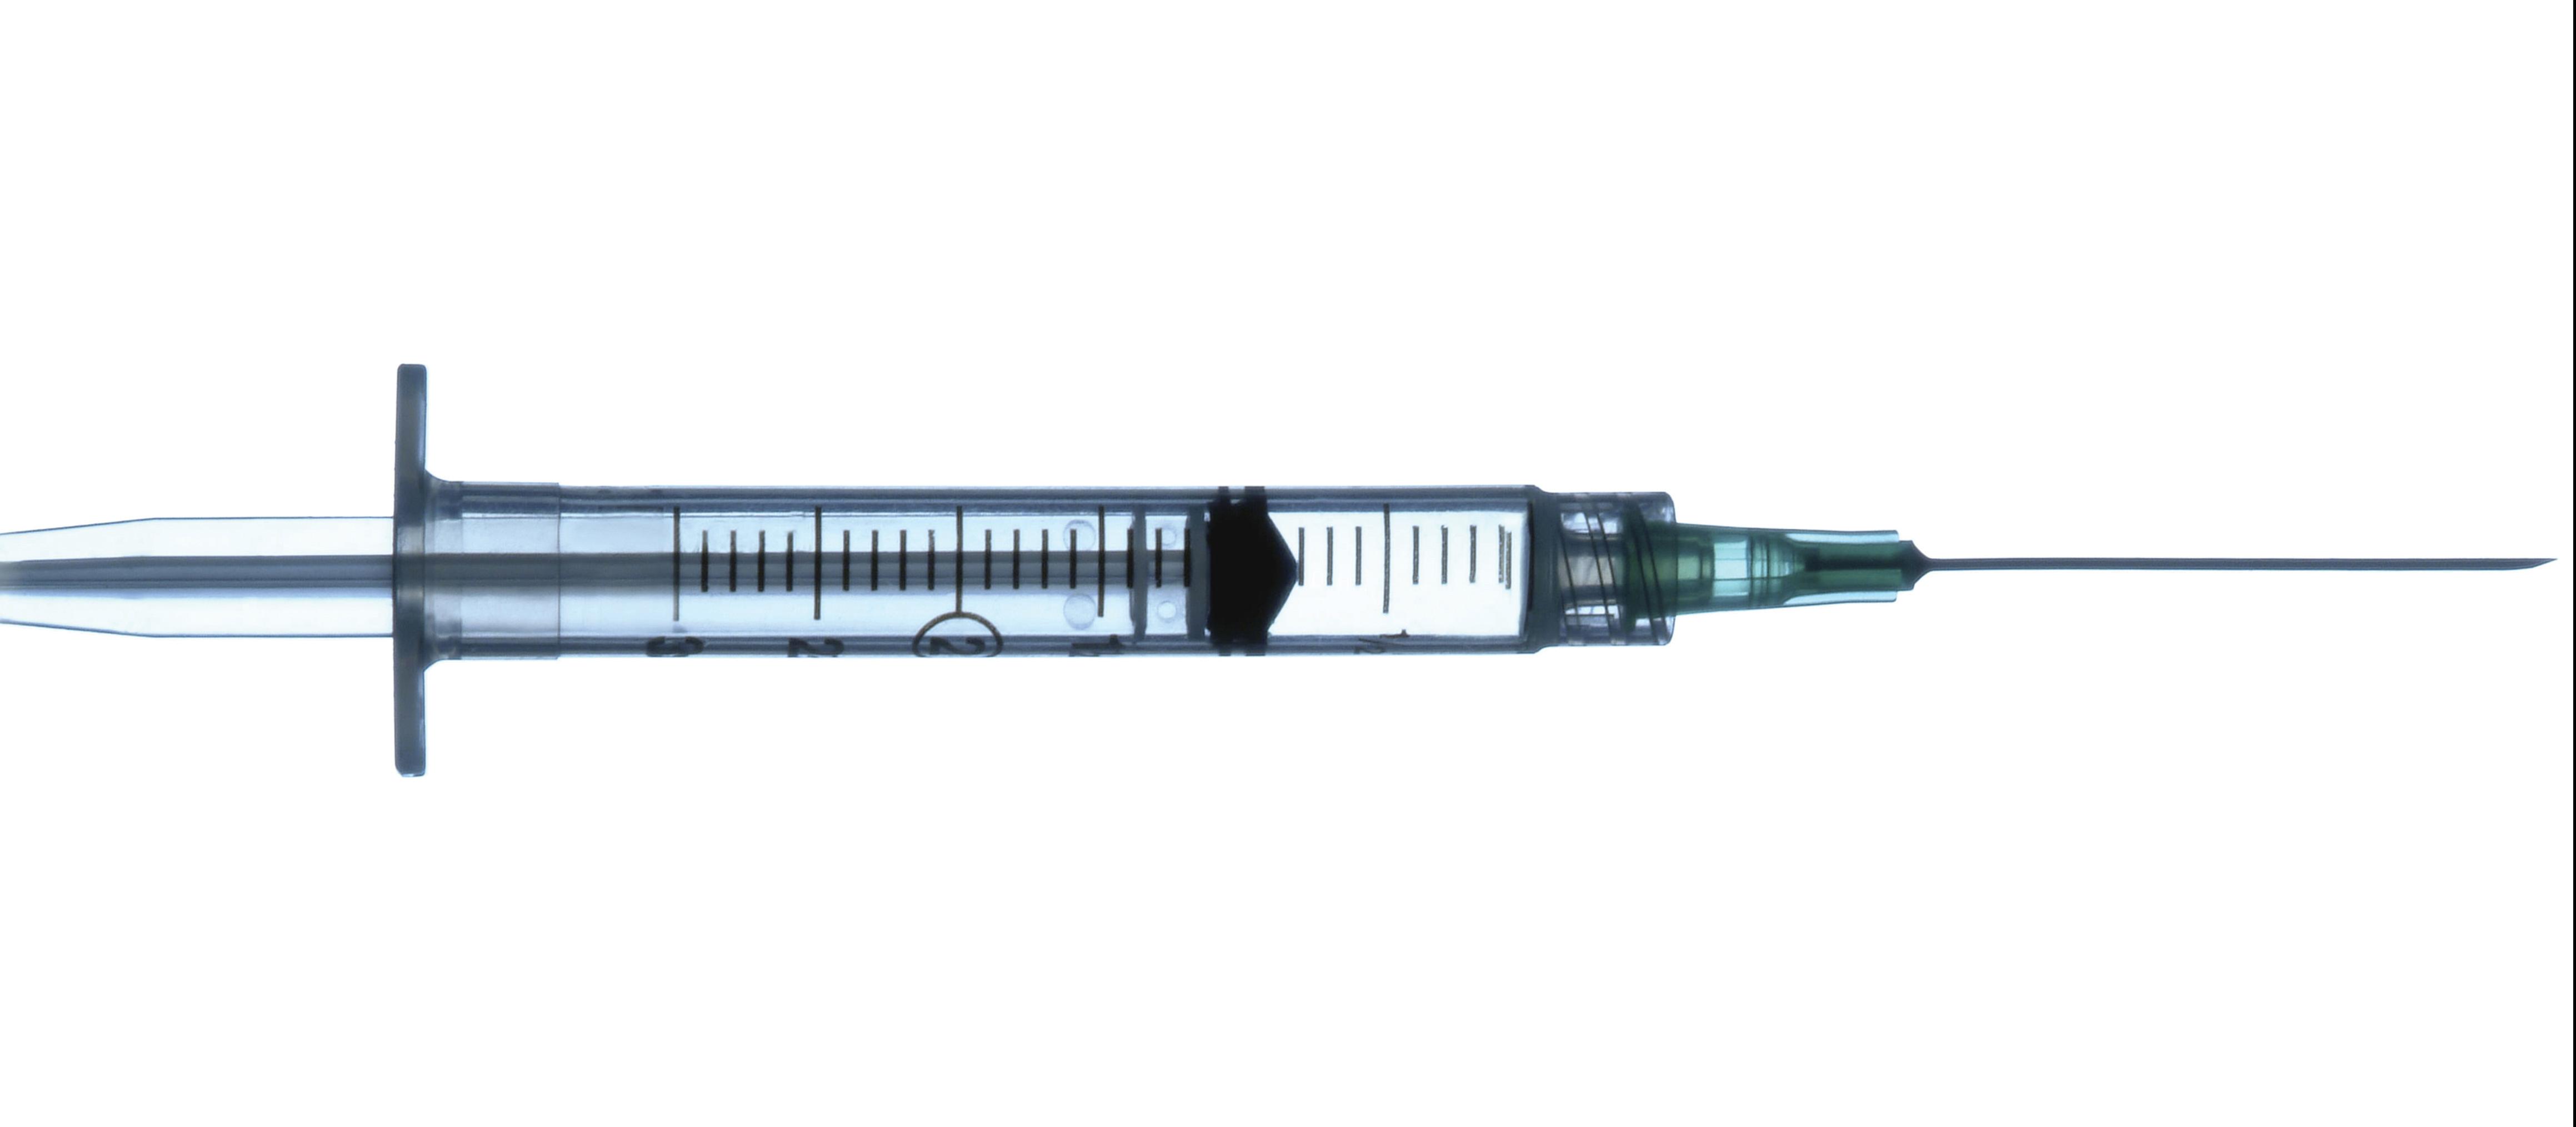 Single syringe